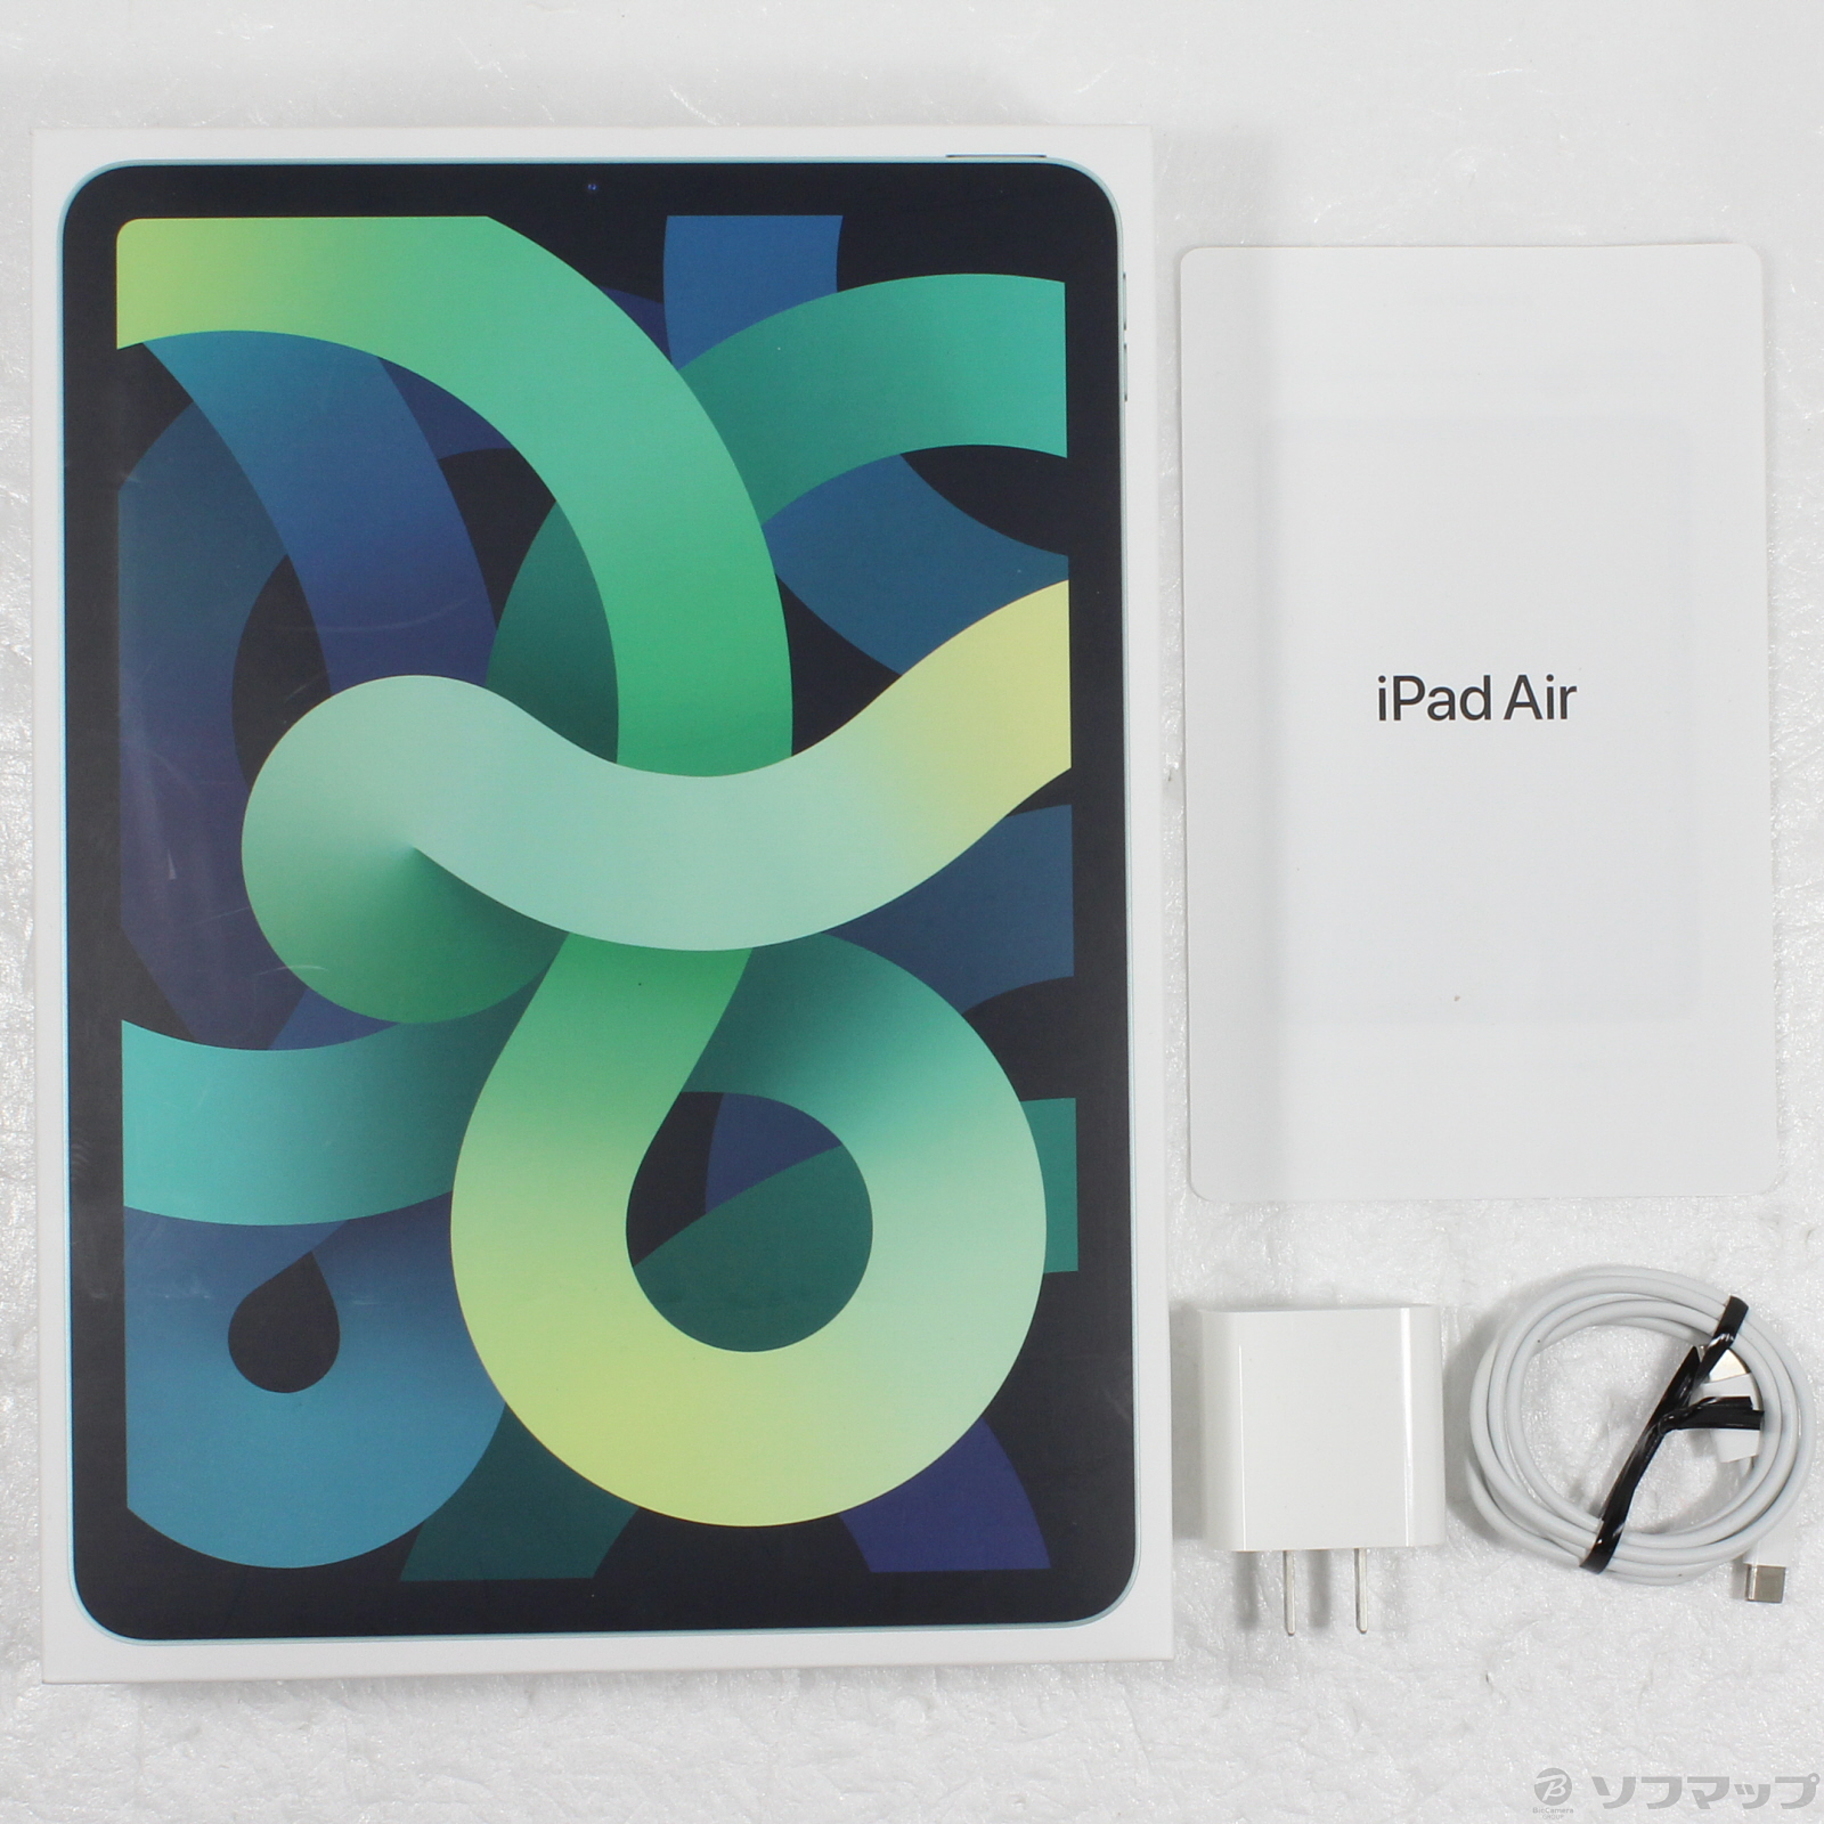 安い正本【iPadAir4】WiFiモデル64GB グリーン 美品 充電器コード付属 iPadアクセサリー